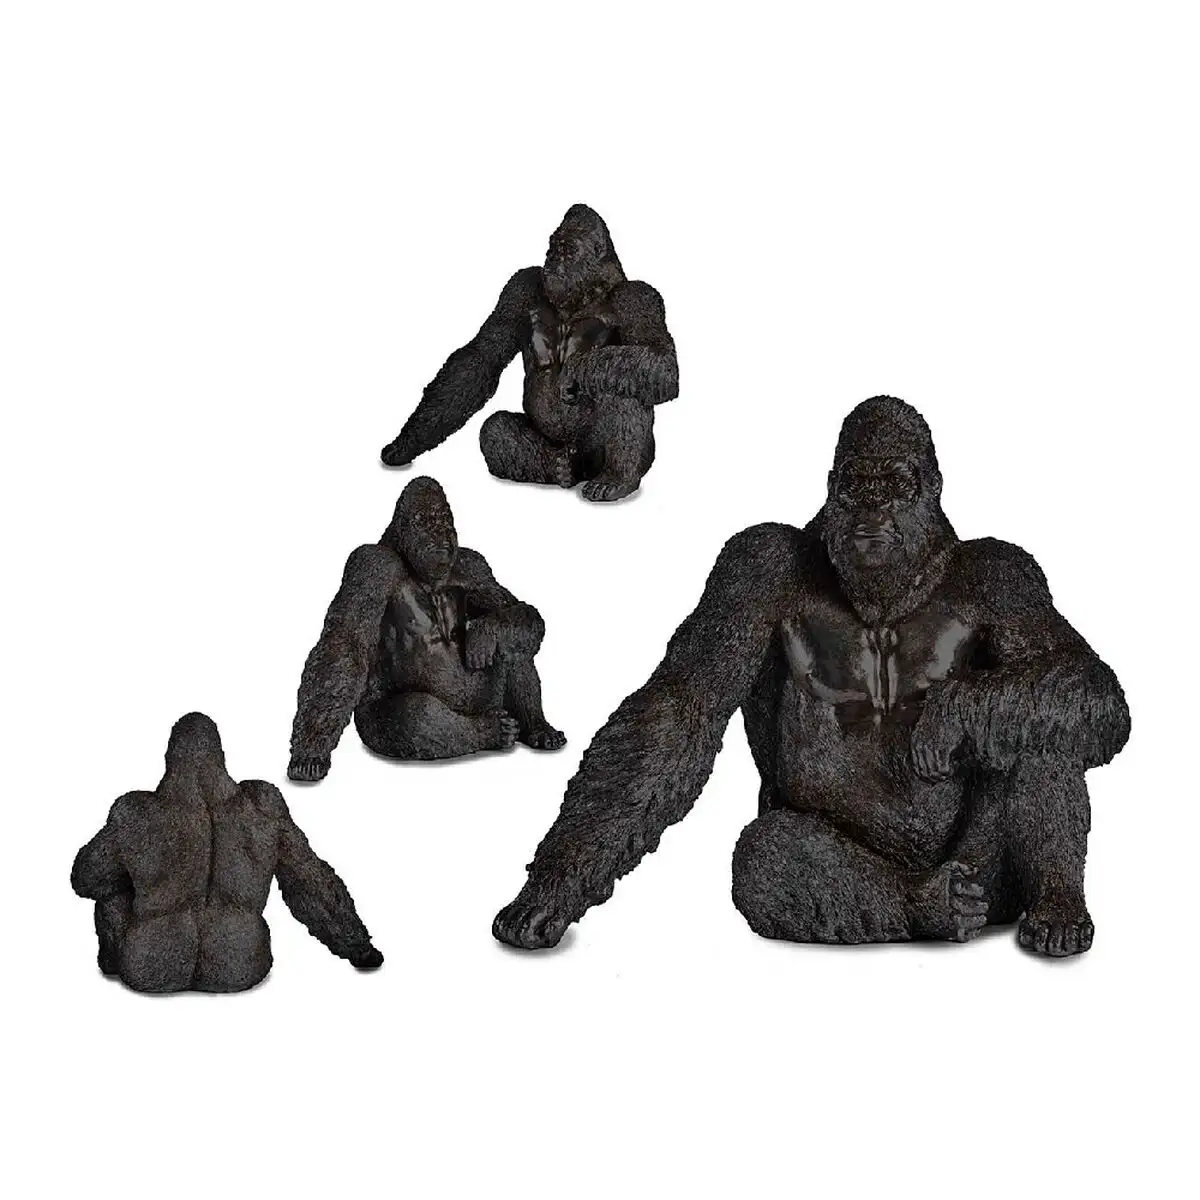 Figurine decorative gorille noir resine 34 x 50 x 63 cm _8071. Votre Destination de Choix: DIAYTAR SENEGAL - Où l'Authenticité Rencontre la Commodité. Faites l'expérience de magasiner en ligne pour des articles qui incarnent la richesse culturelle et la modernité du Sénégal.